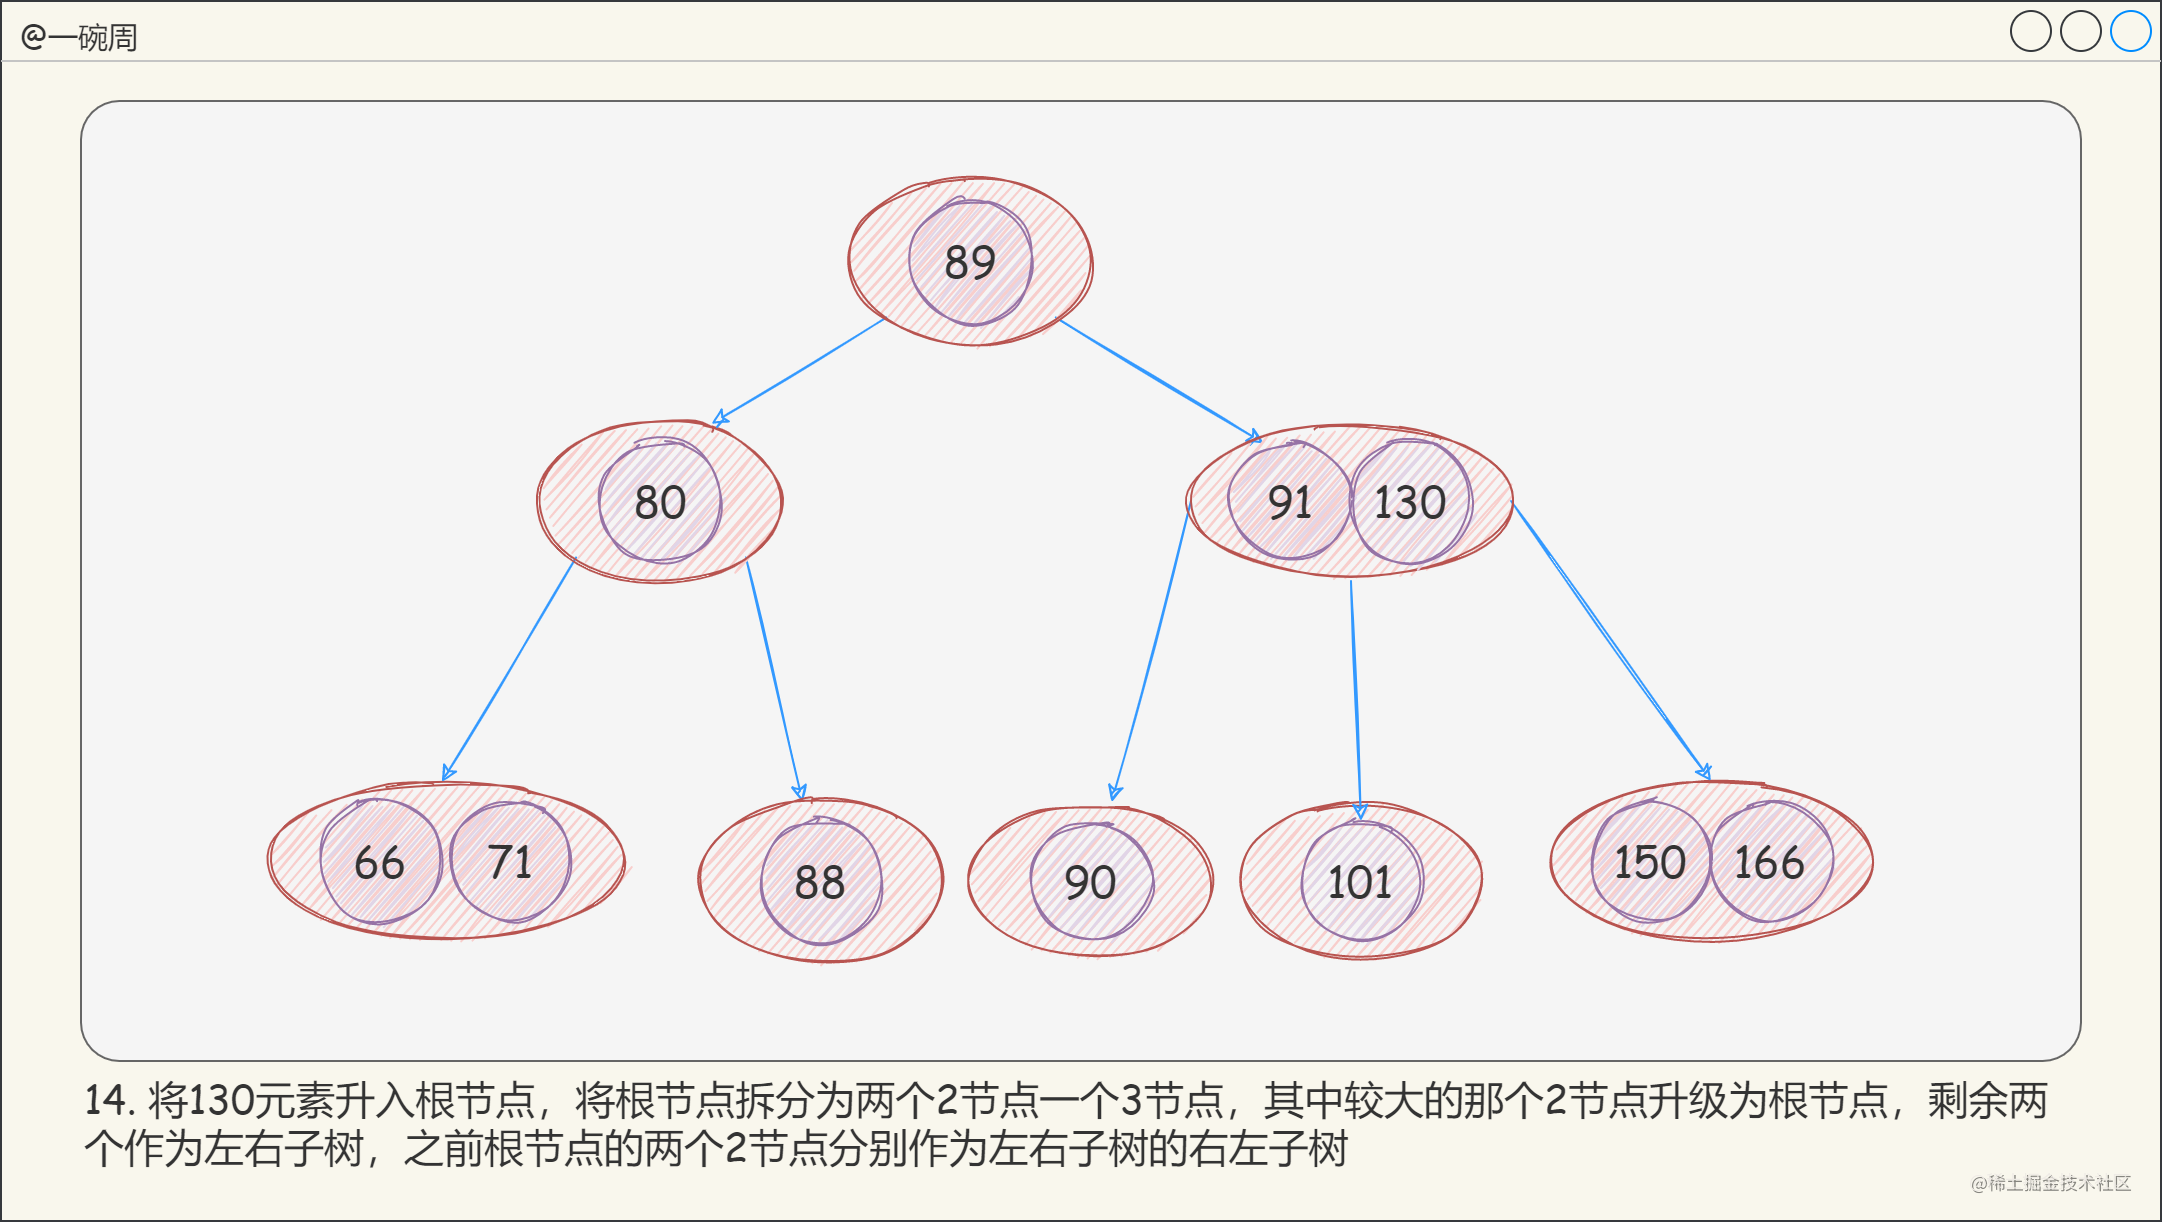 13_2-3-4樹的構建過程10_gEhxK4O_ok.png